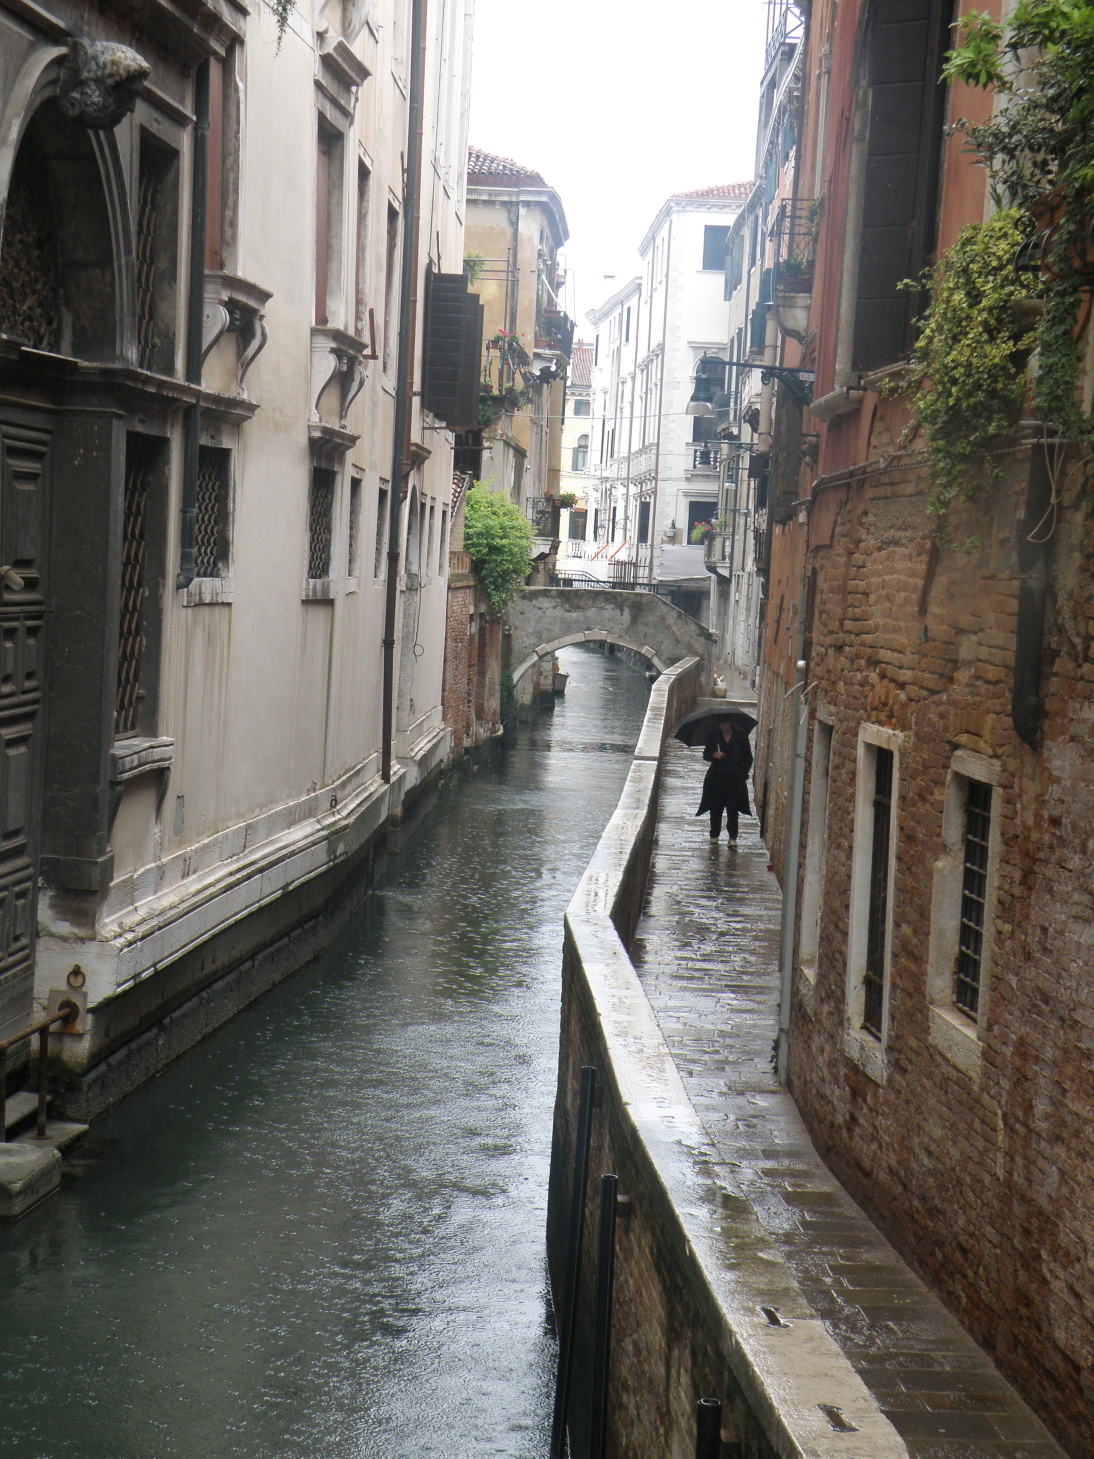 Takova je ulice v Benatkach